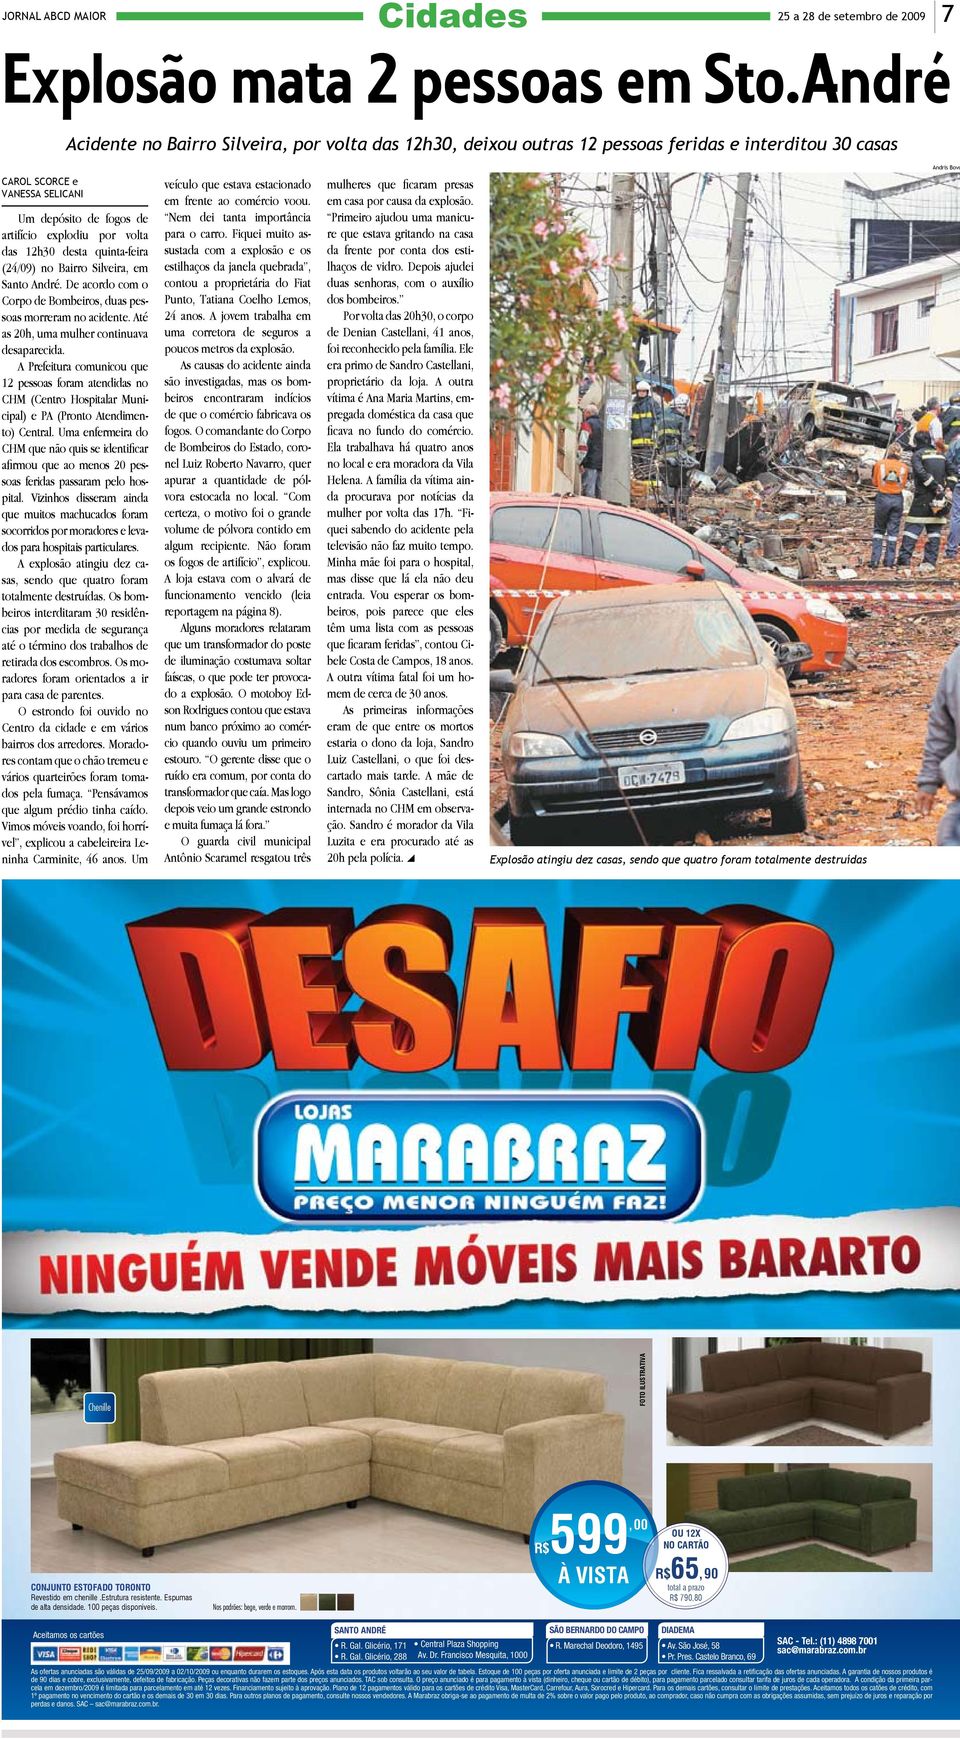 quinta-feira (24/09) no Bairro Silveira, em Santo André. De acordo com o Corpo de Bombeiros, duas pessoas morreram no acidente. Até as 20h, uma mulher continuava desaparecida.